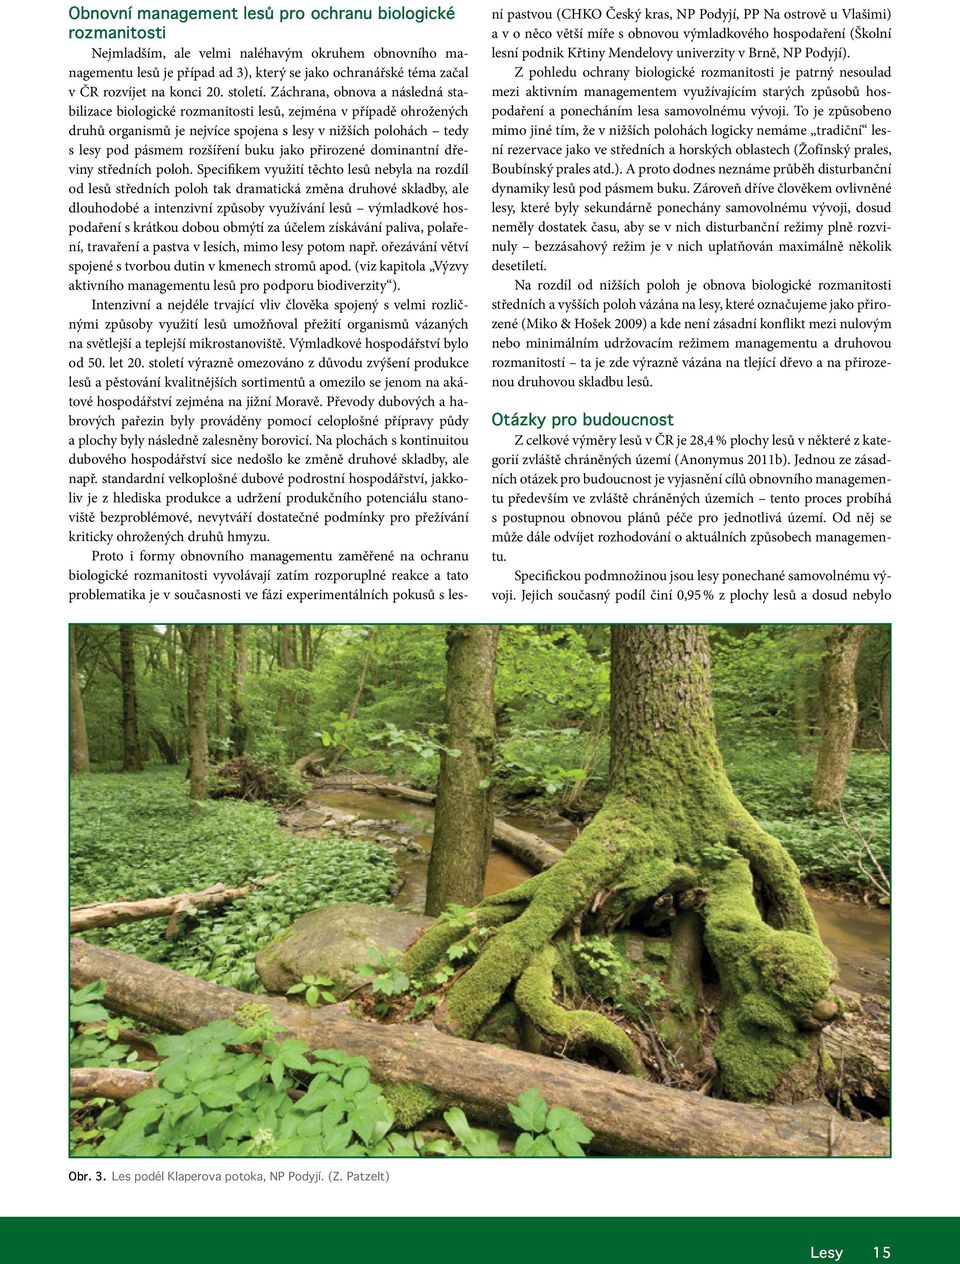 Záchrana, obnova a následná stabilizace biologické rozmanitosti lesů, zejména v případě ohrožených druhů organismů je nejvíce spojena s lesy v nižších polohách tedy s lesy pod pásmem rozšíření buku